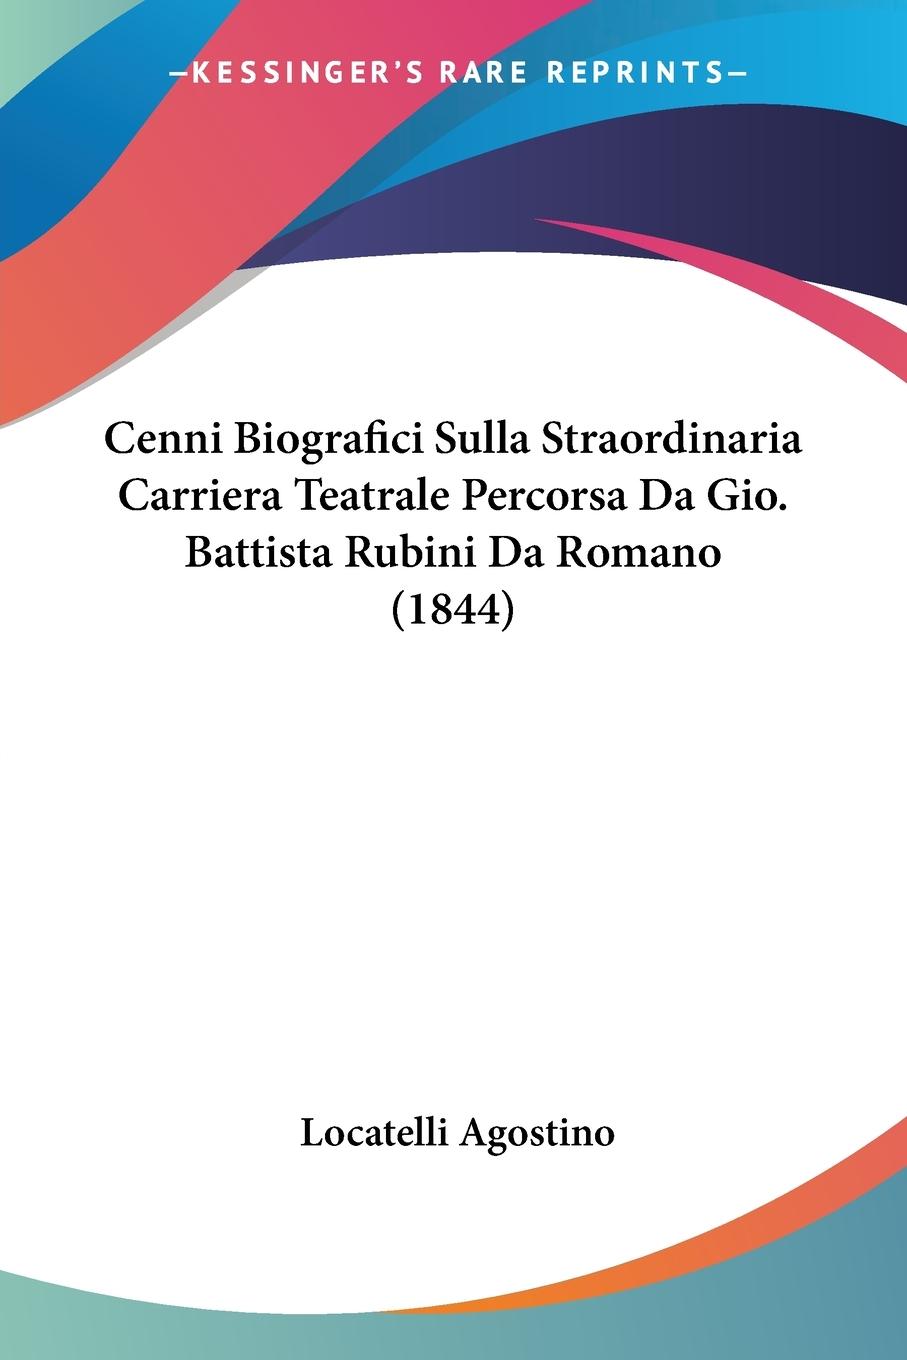 Cenni Biografici Sulla Straordinaria Carriera Teatrale Percorsa Da Gio. Battista Rubini Da Romano (1844) - Agostino, Locatelli